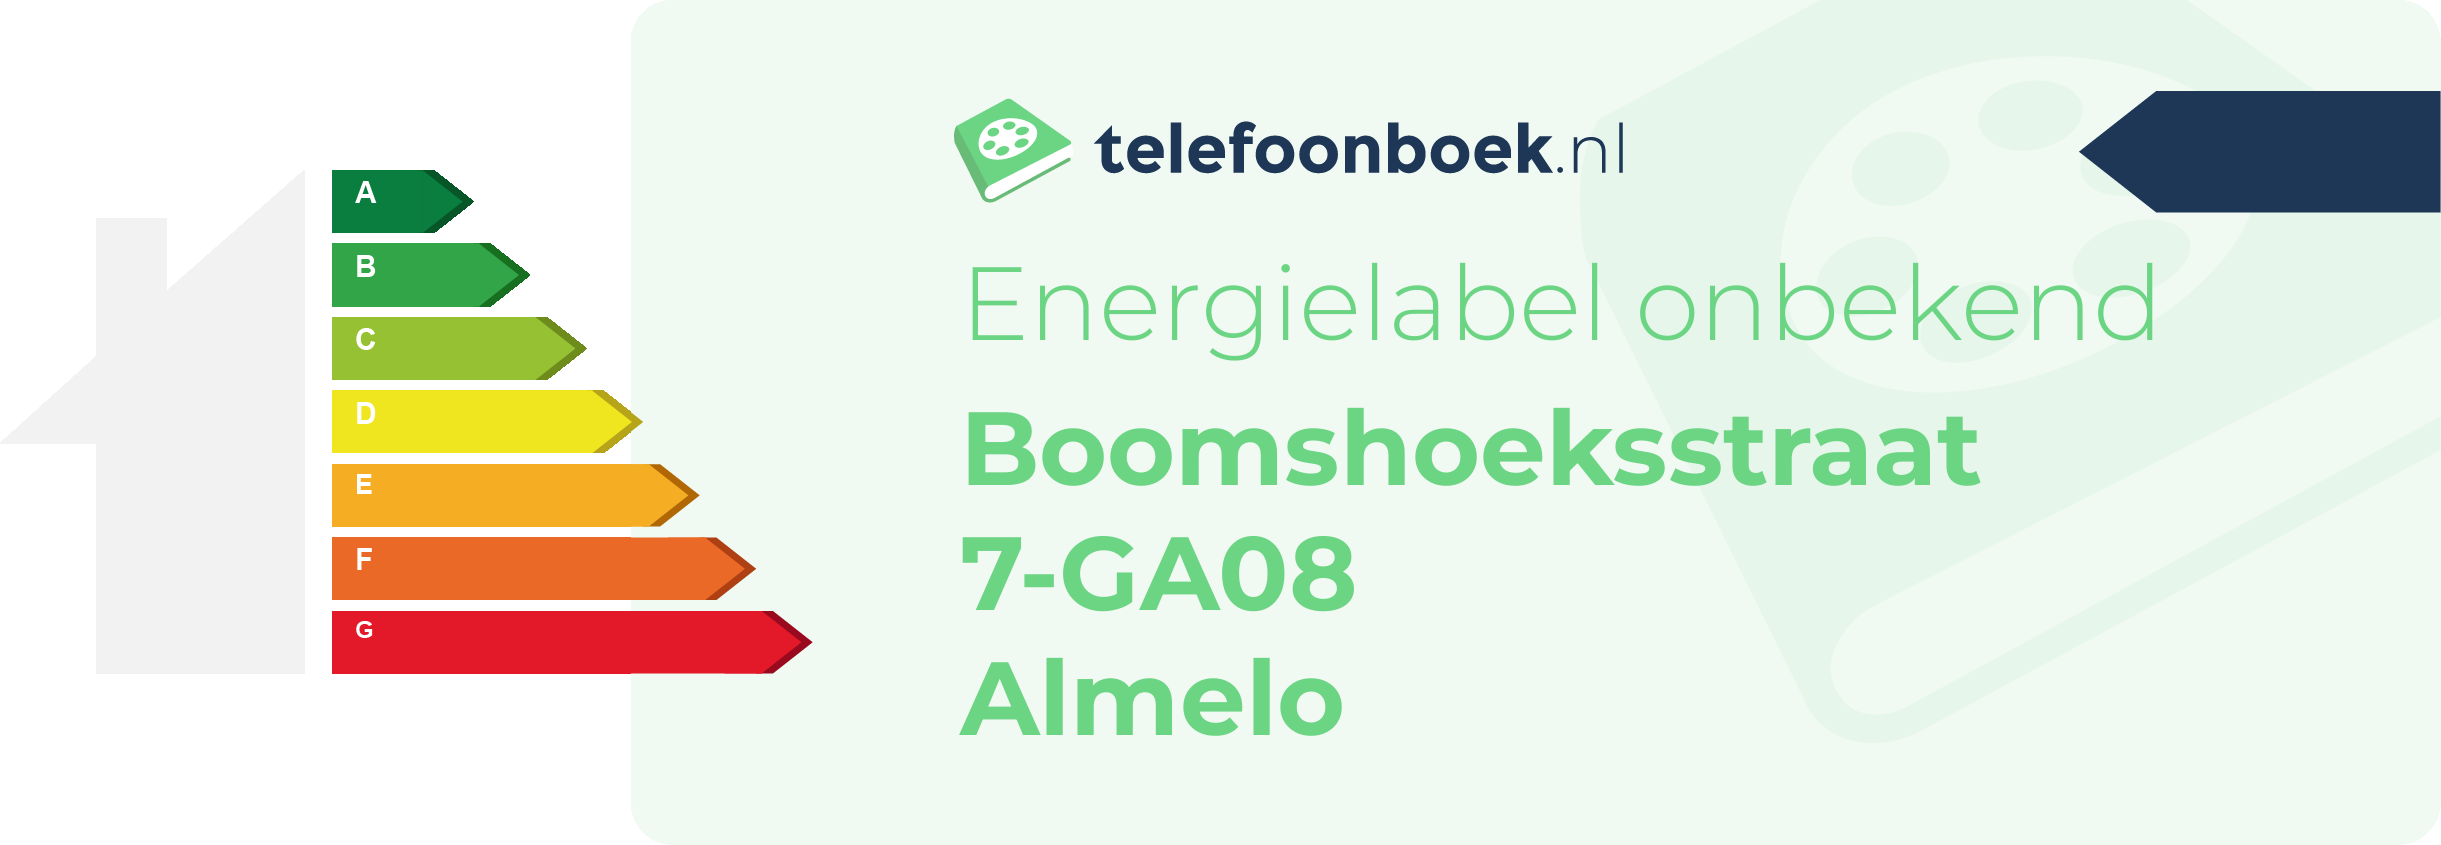 Energielabel Boomshoeksstraat 7-GA08 Almelo